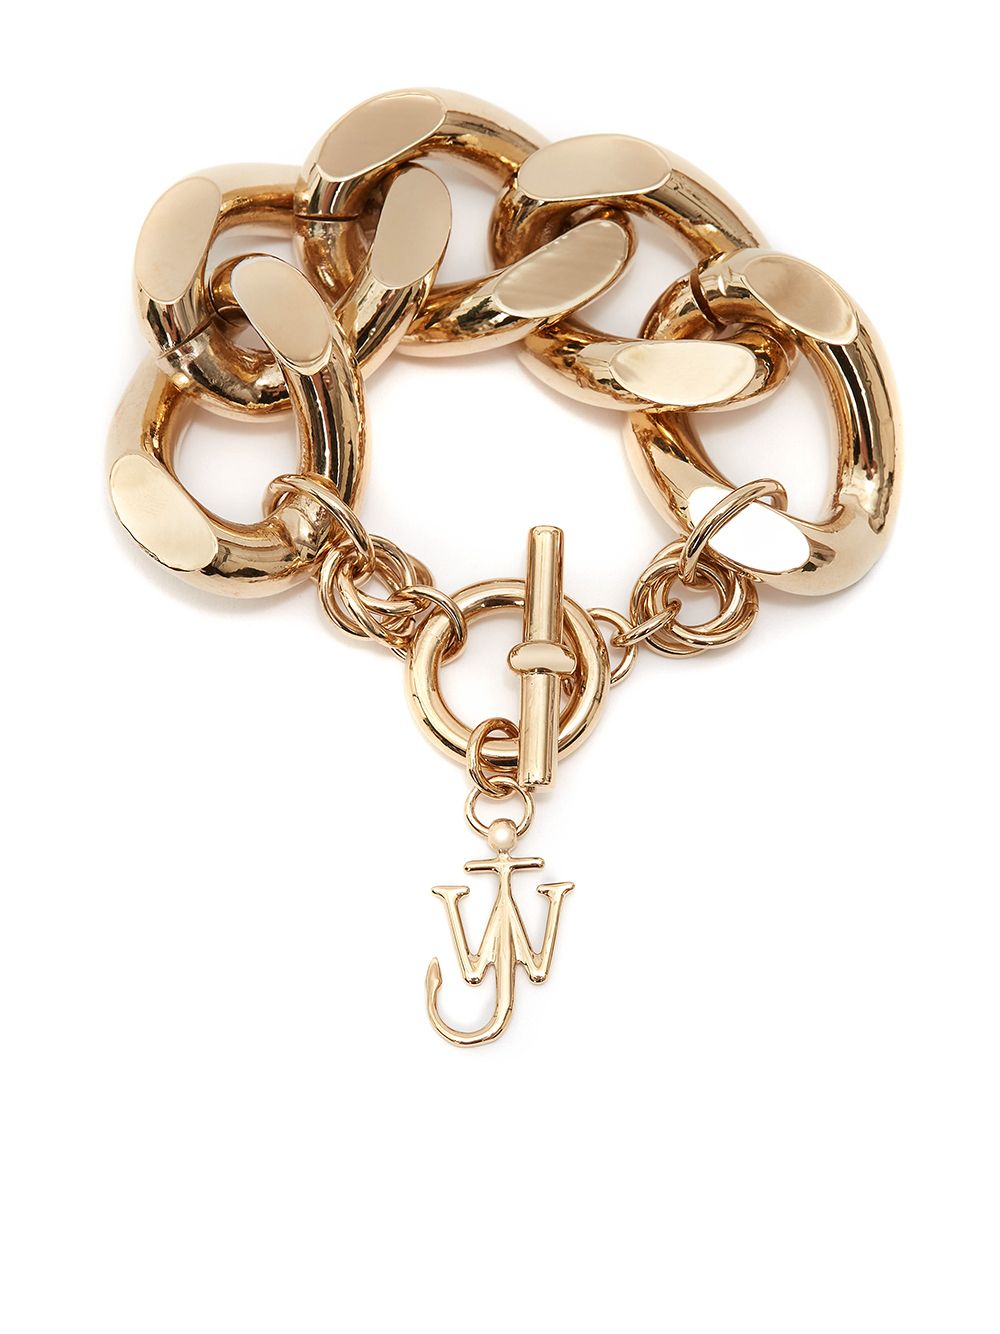 J.W. ANDERSON oversized chain-link bracelet